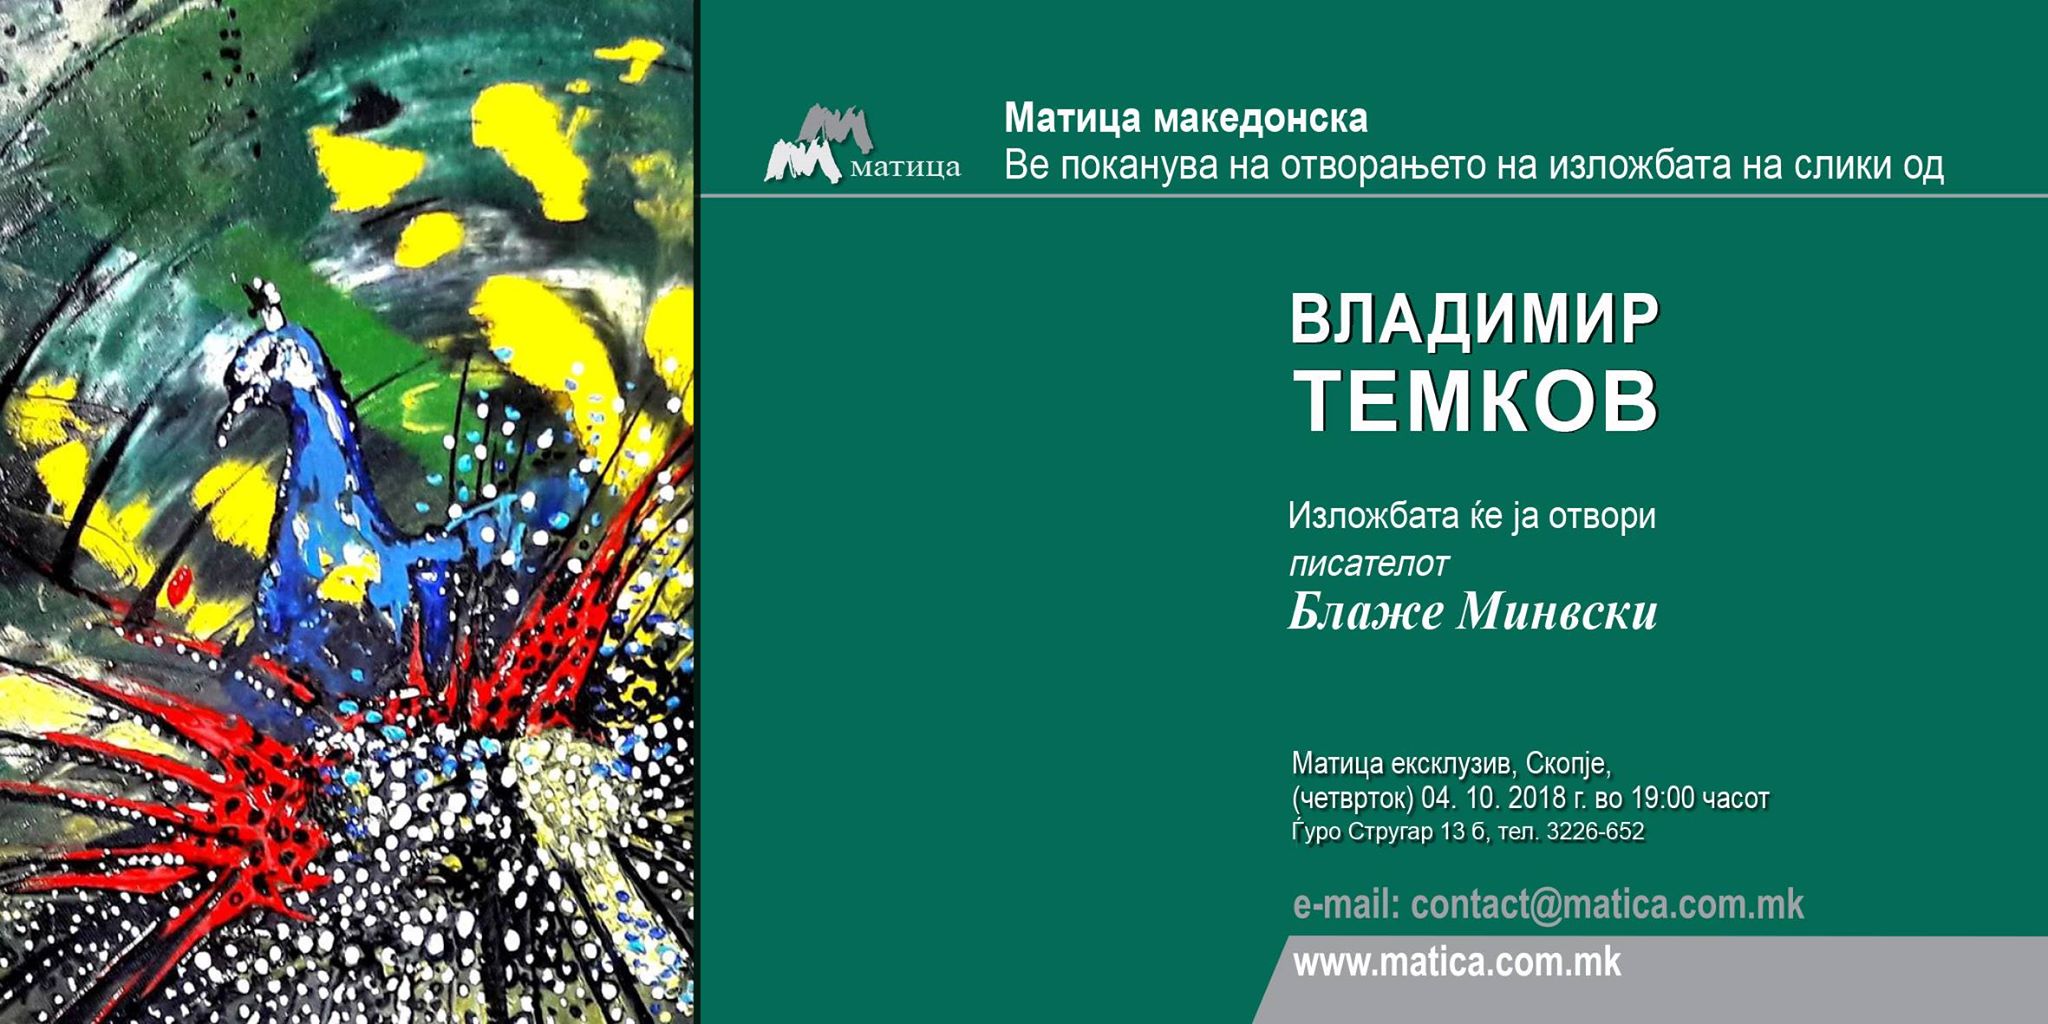 Изложба на Темков во Матица Македонска 